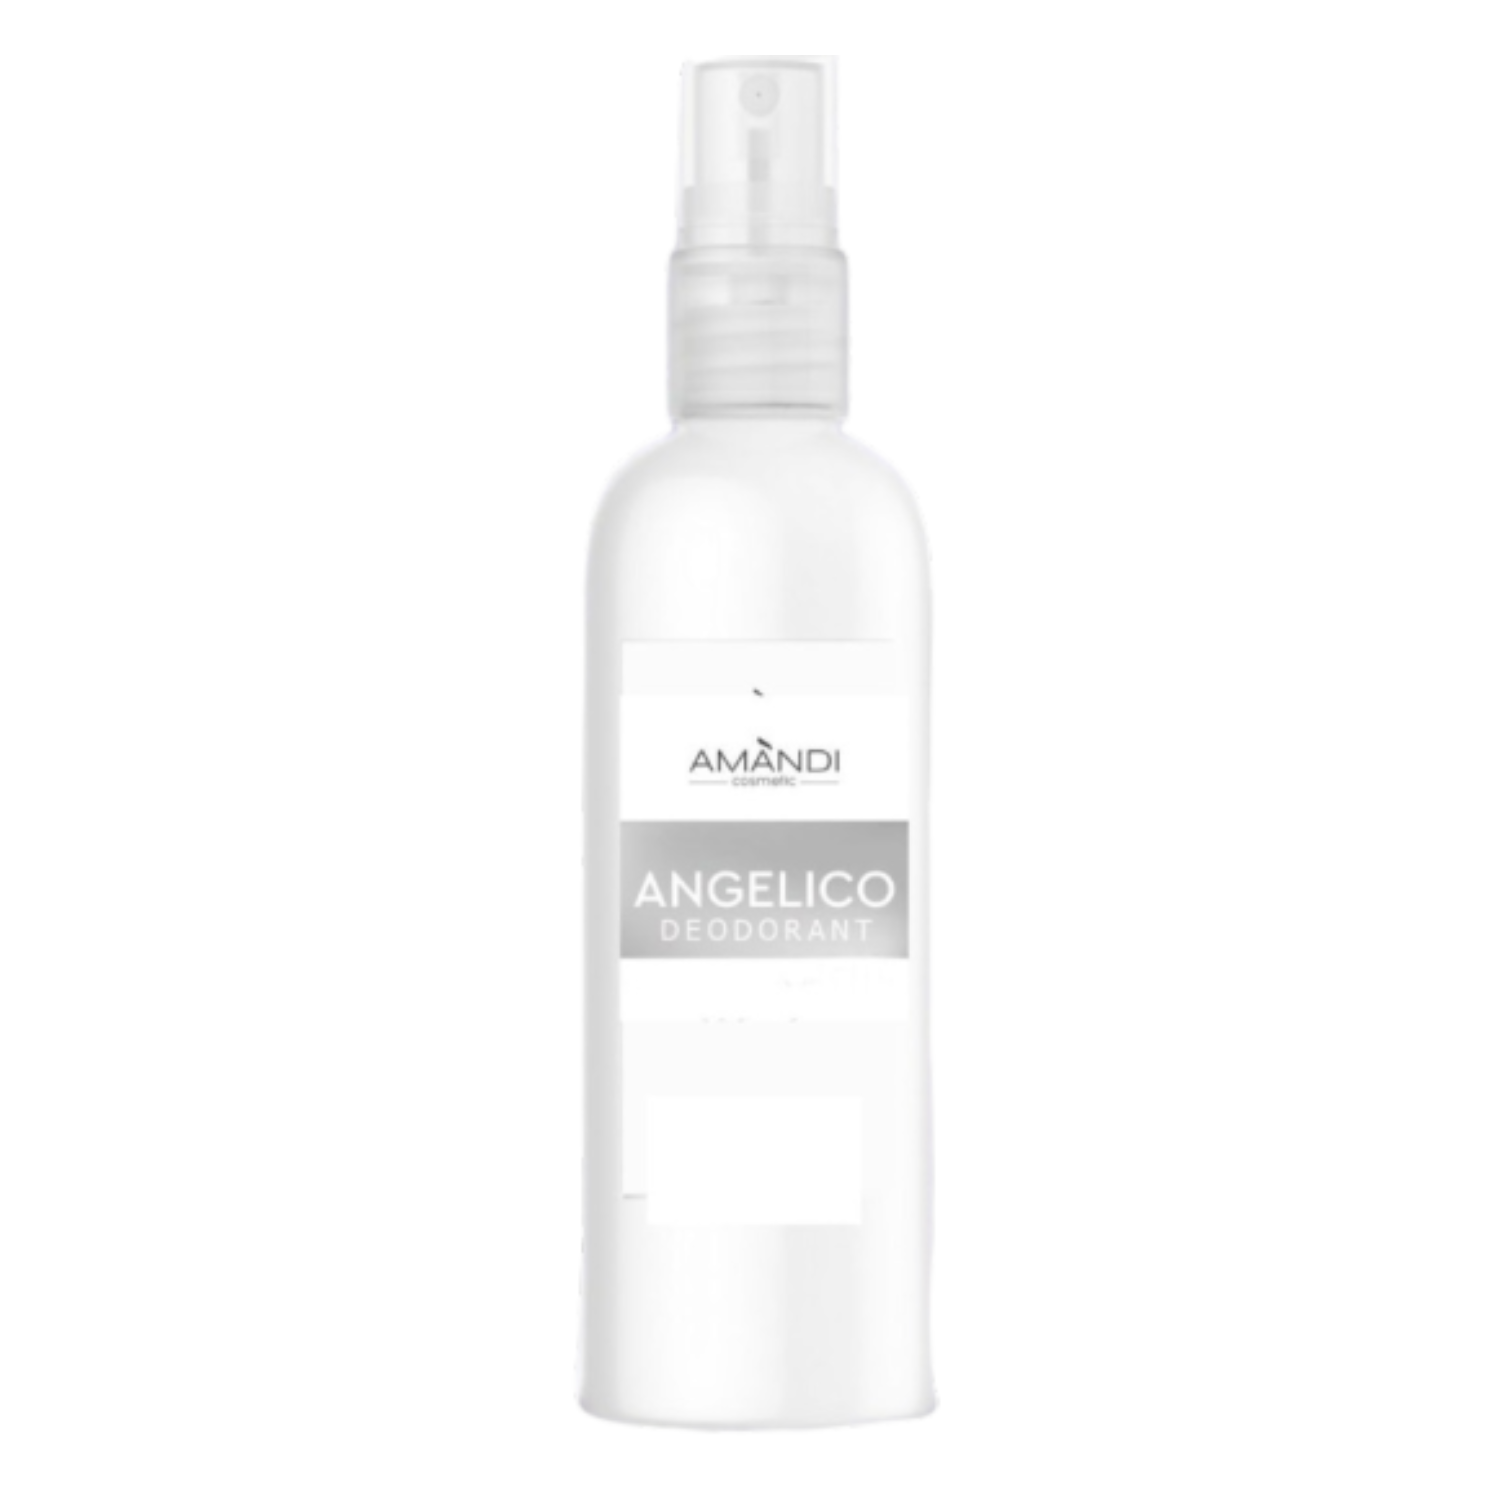 Минеральный дезодорант-спрей AMANDI Angelico цветочно-фруковый аромат 100 мл - фото 1